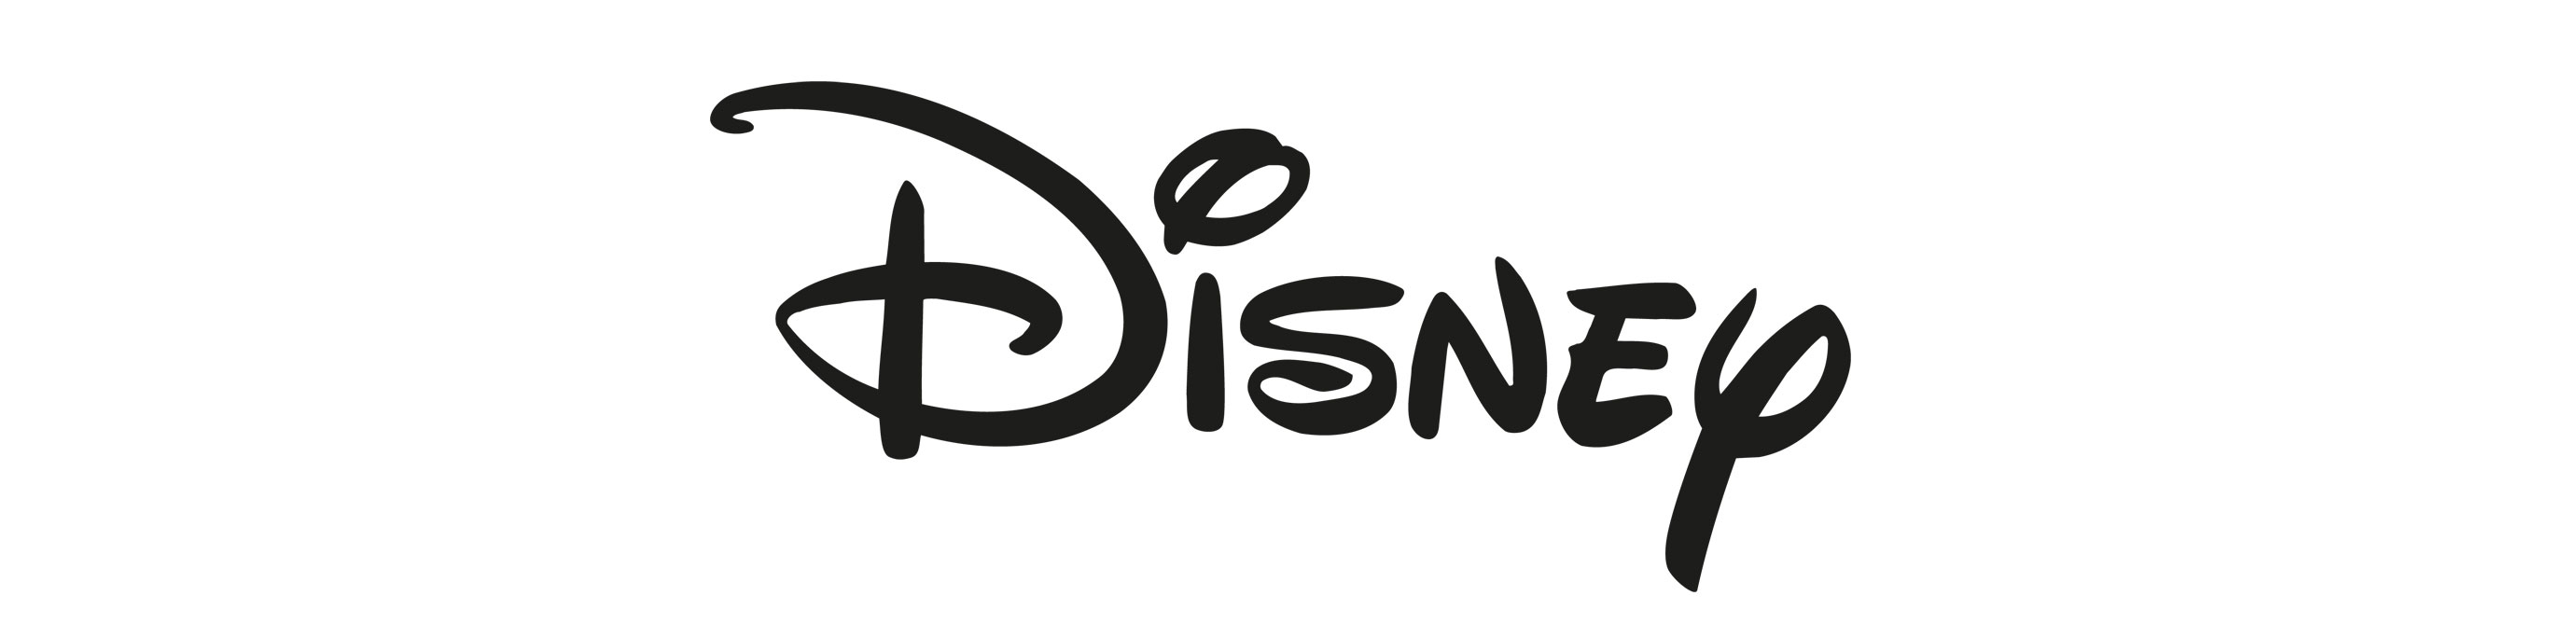 Disney_logobanner.jpg